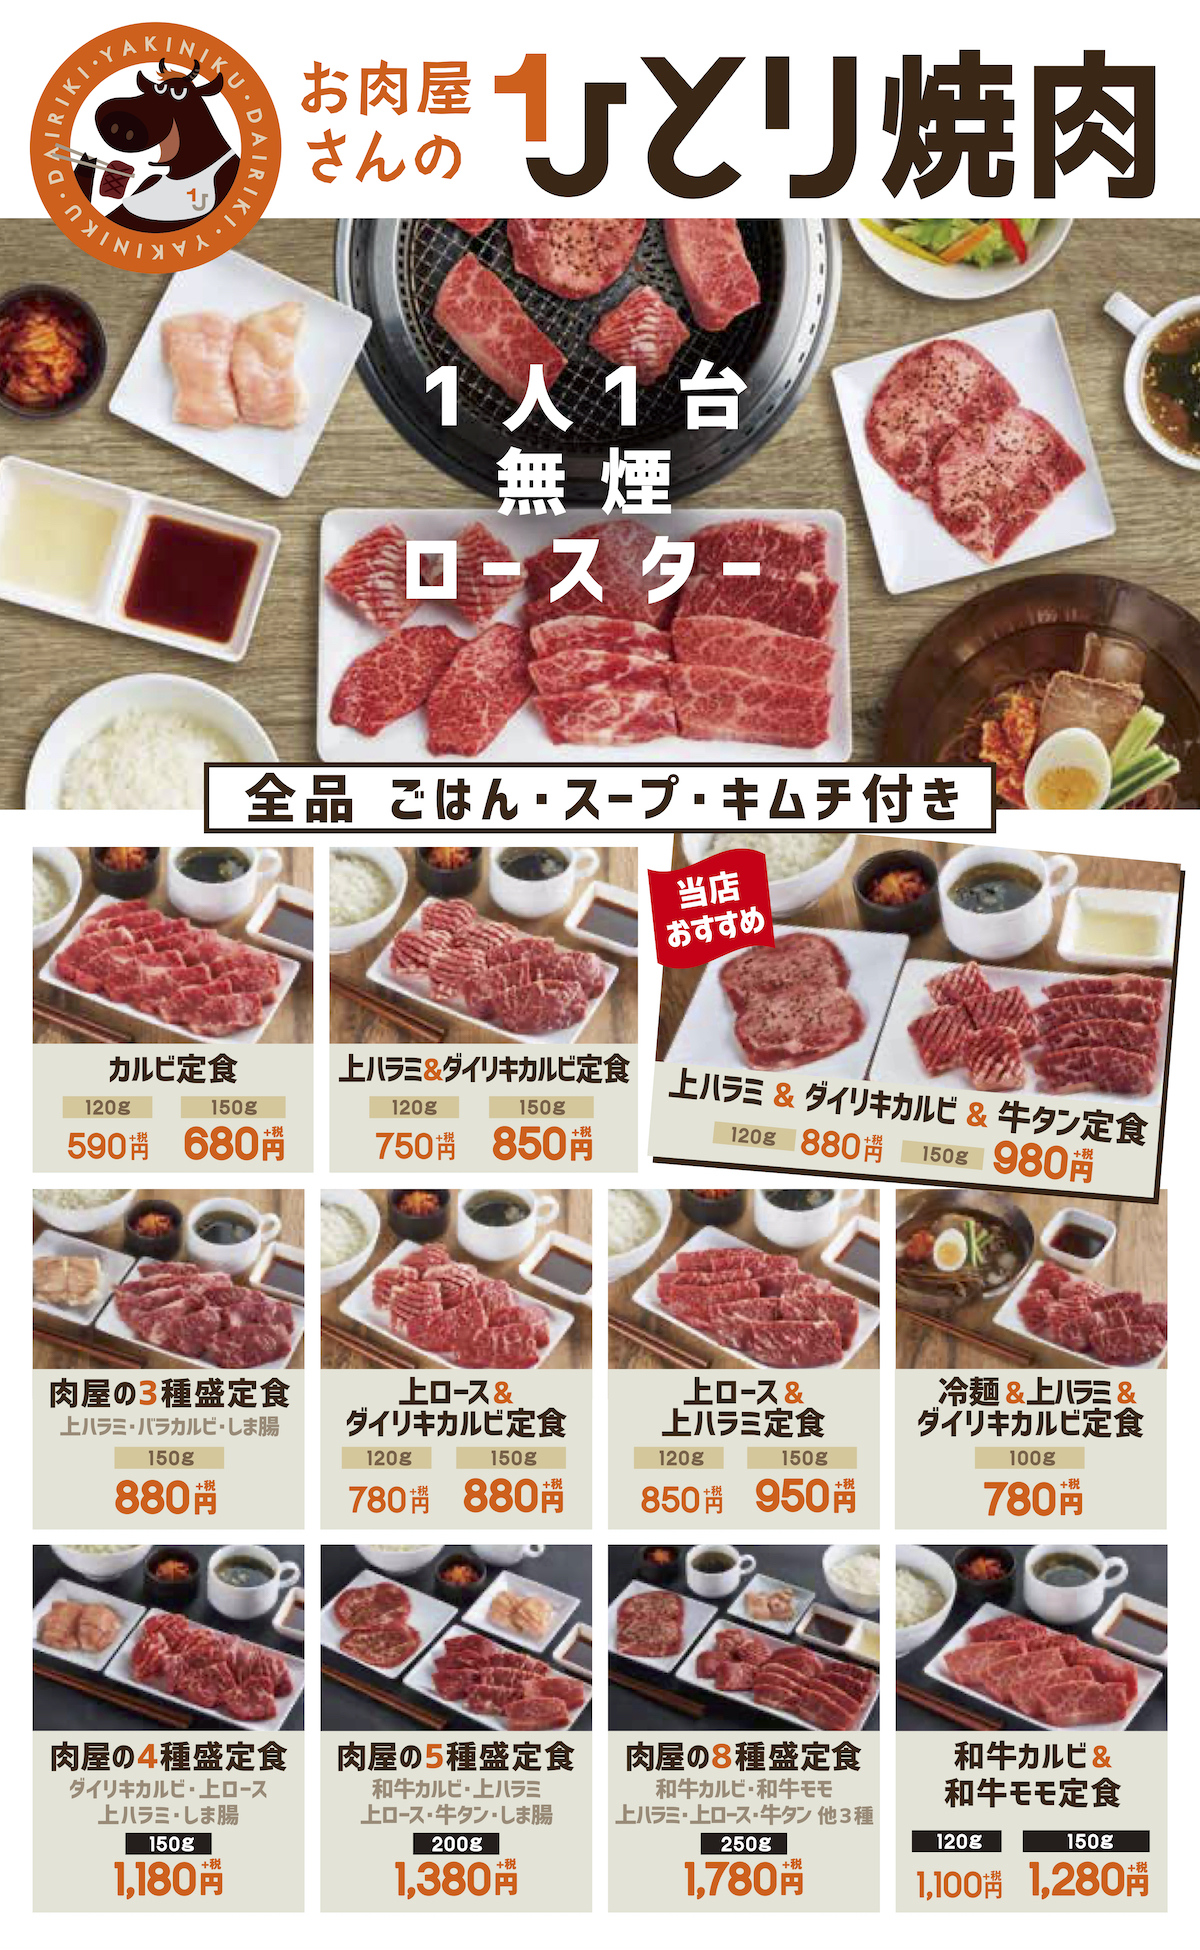 若江岩田に帰ってくる 肉のダイリキがひとり焼肉店を引っさげて9月15日に帰還 週刊ひがしおおさか